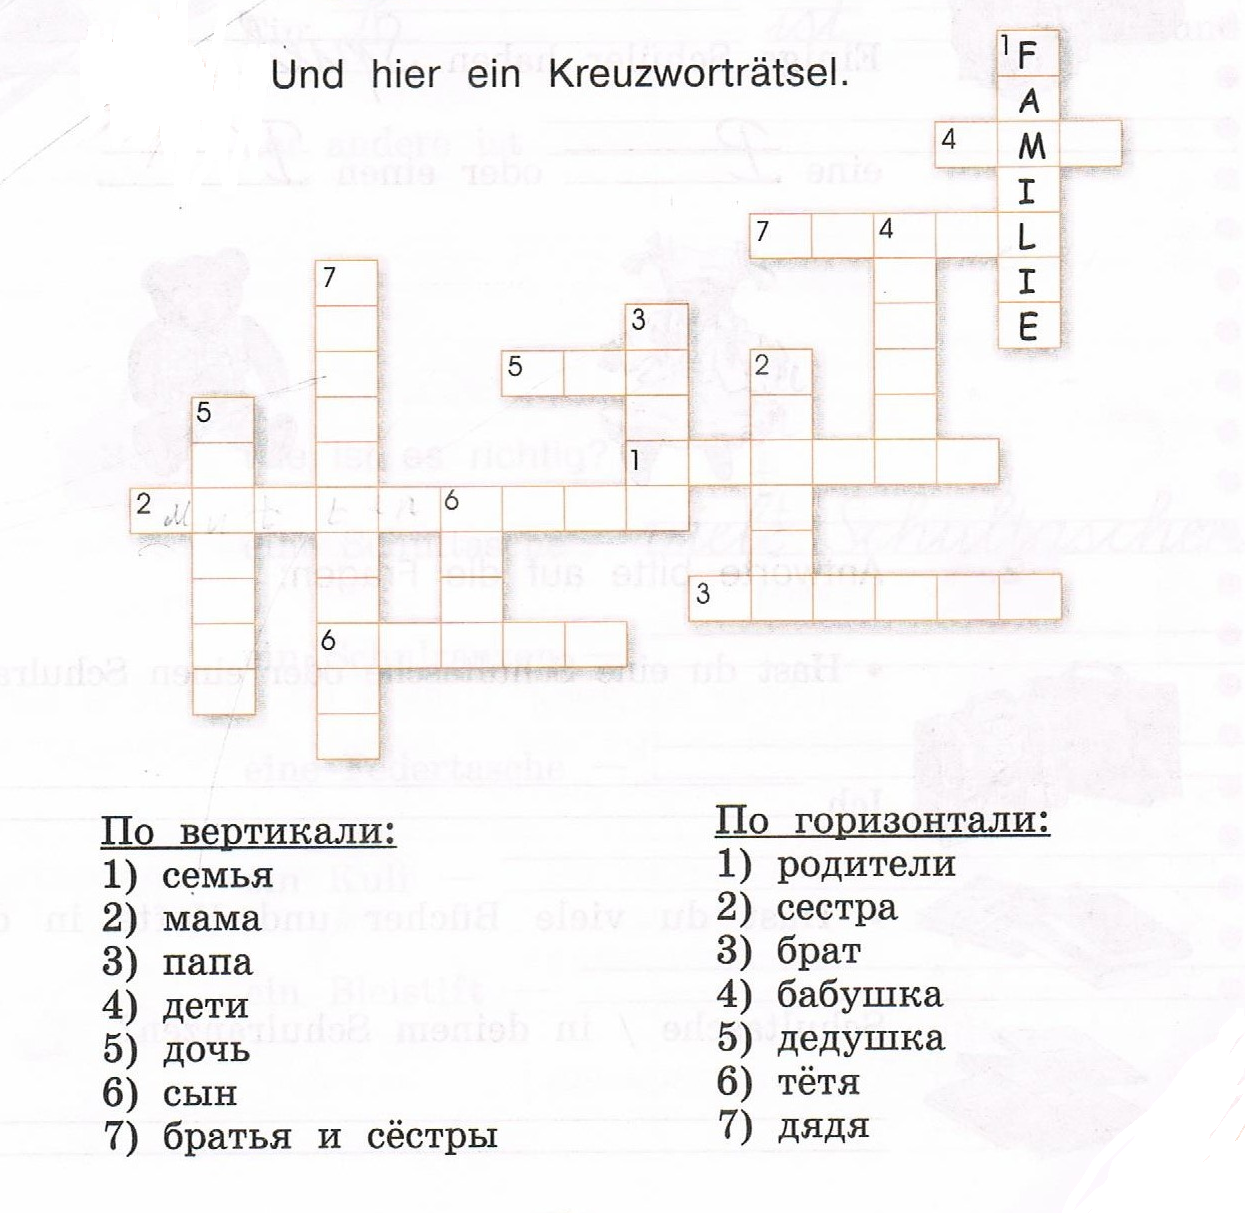 кроссворд на немецком языке на тему мебель